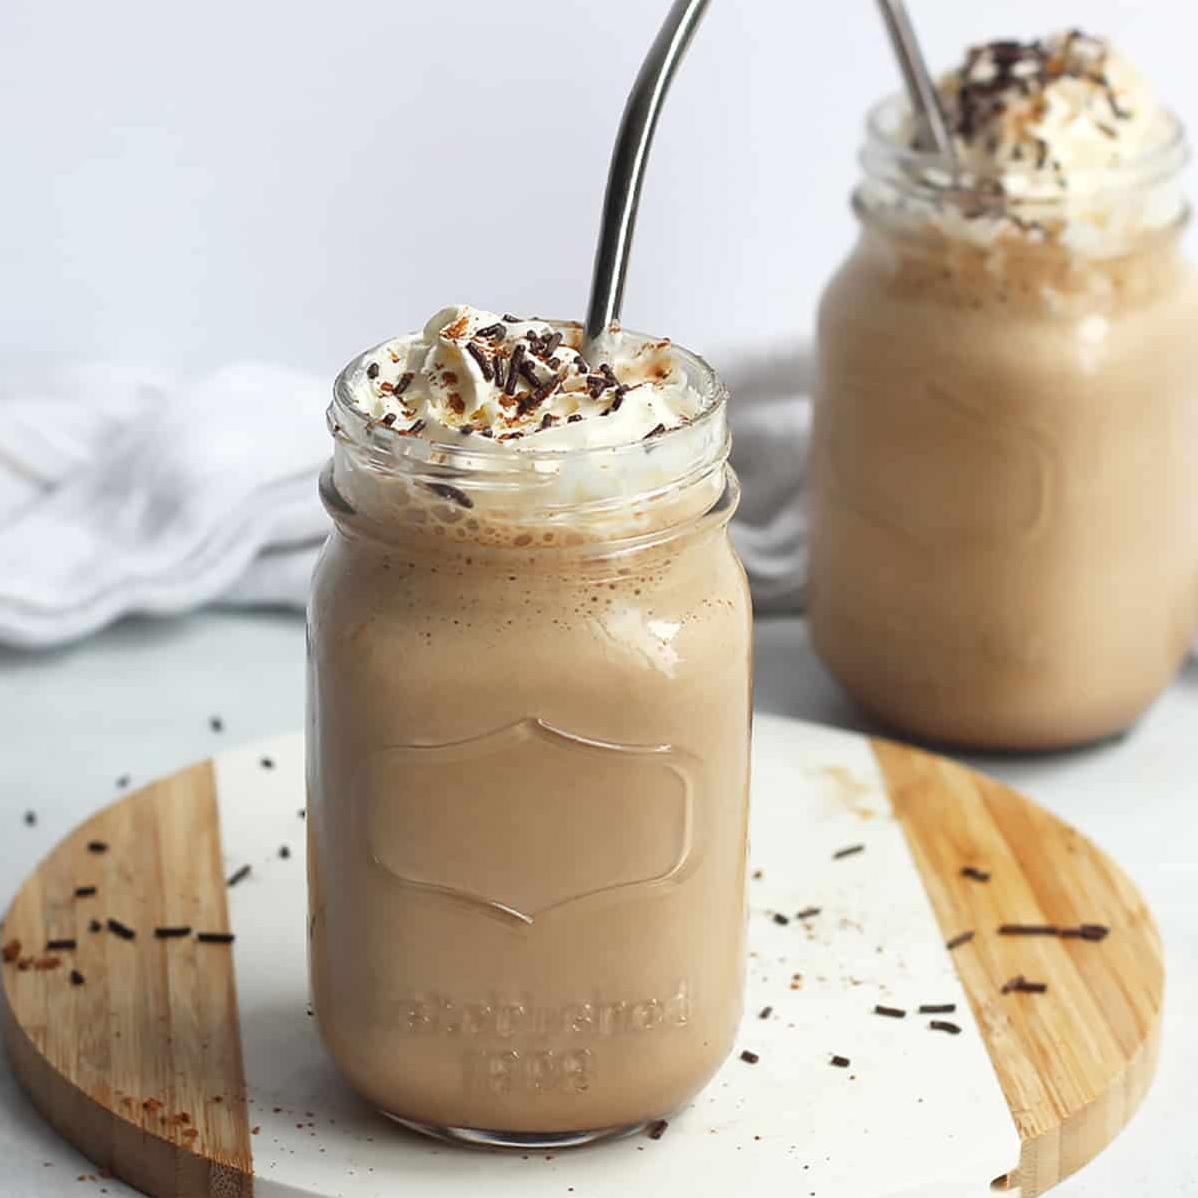  Creamy and indulgent, this milkshake will melt your heart.